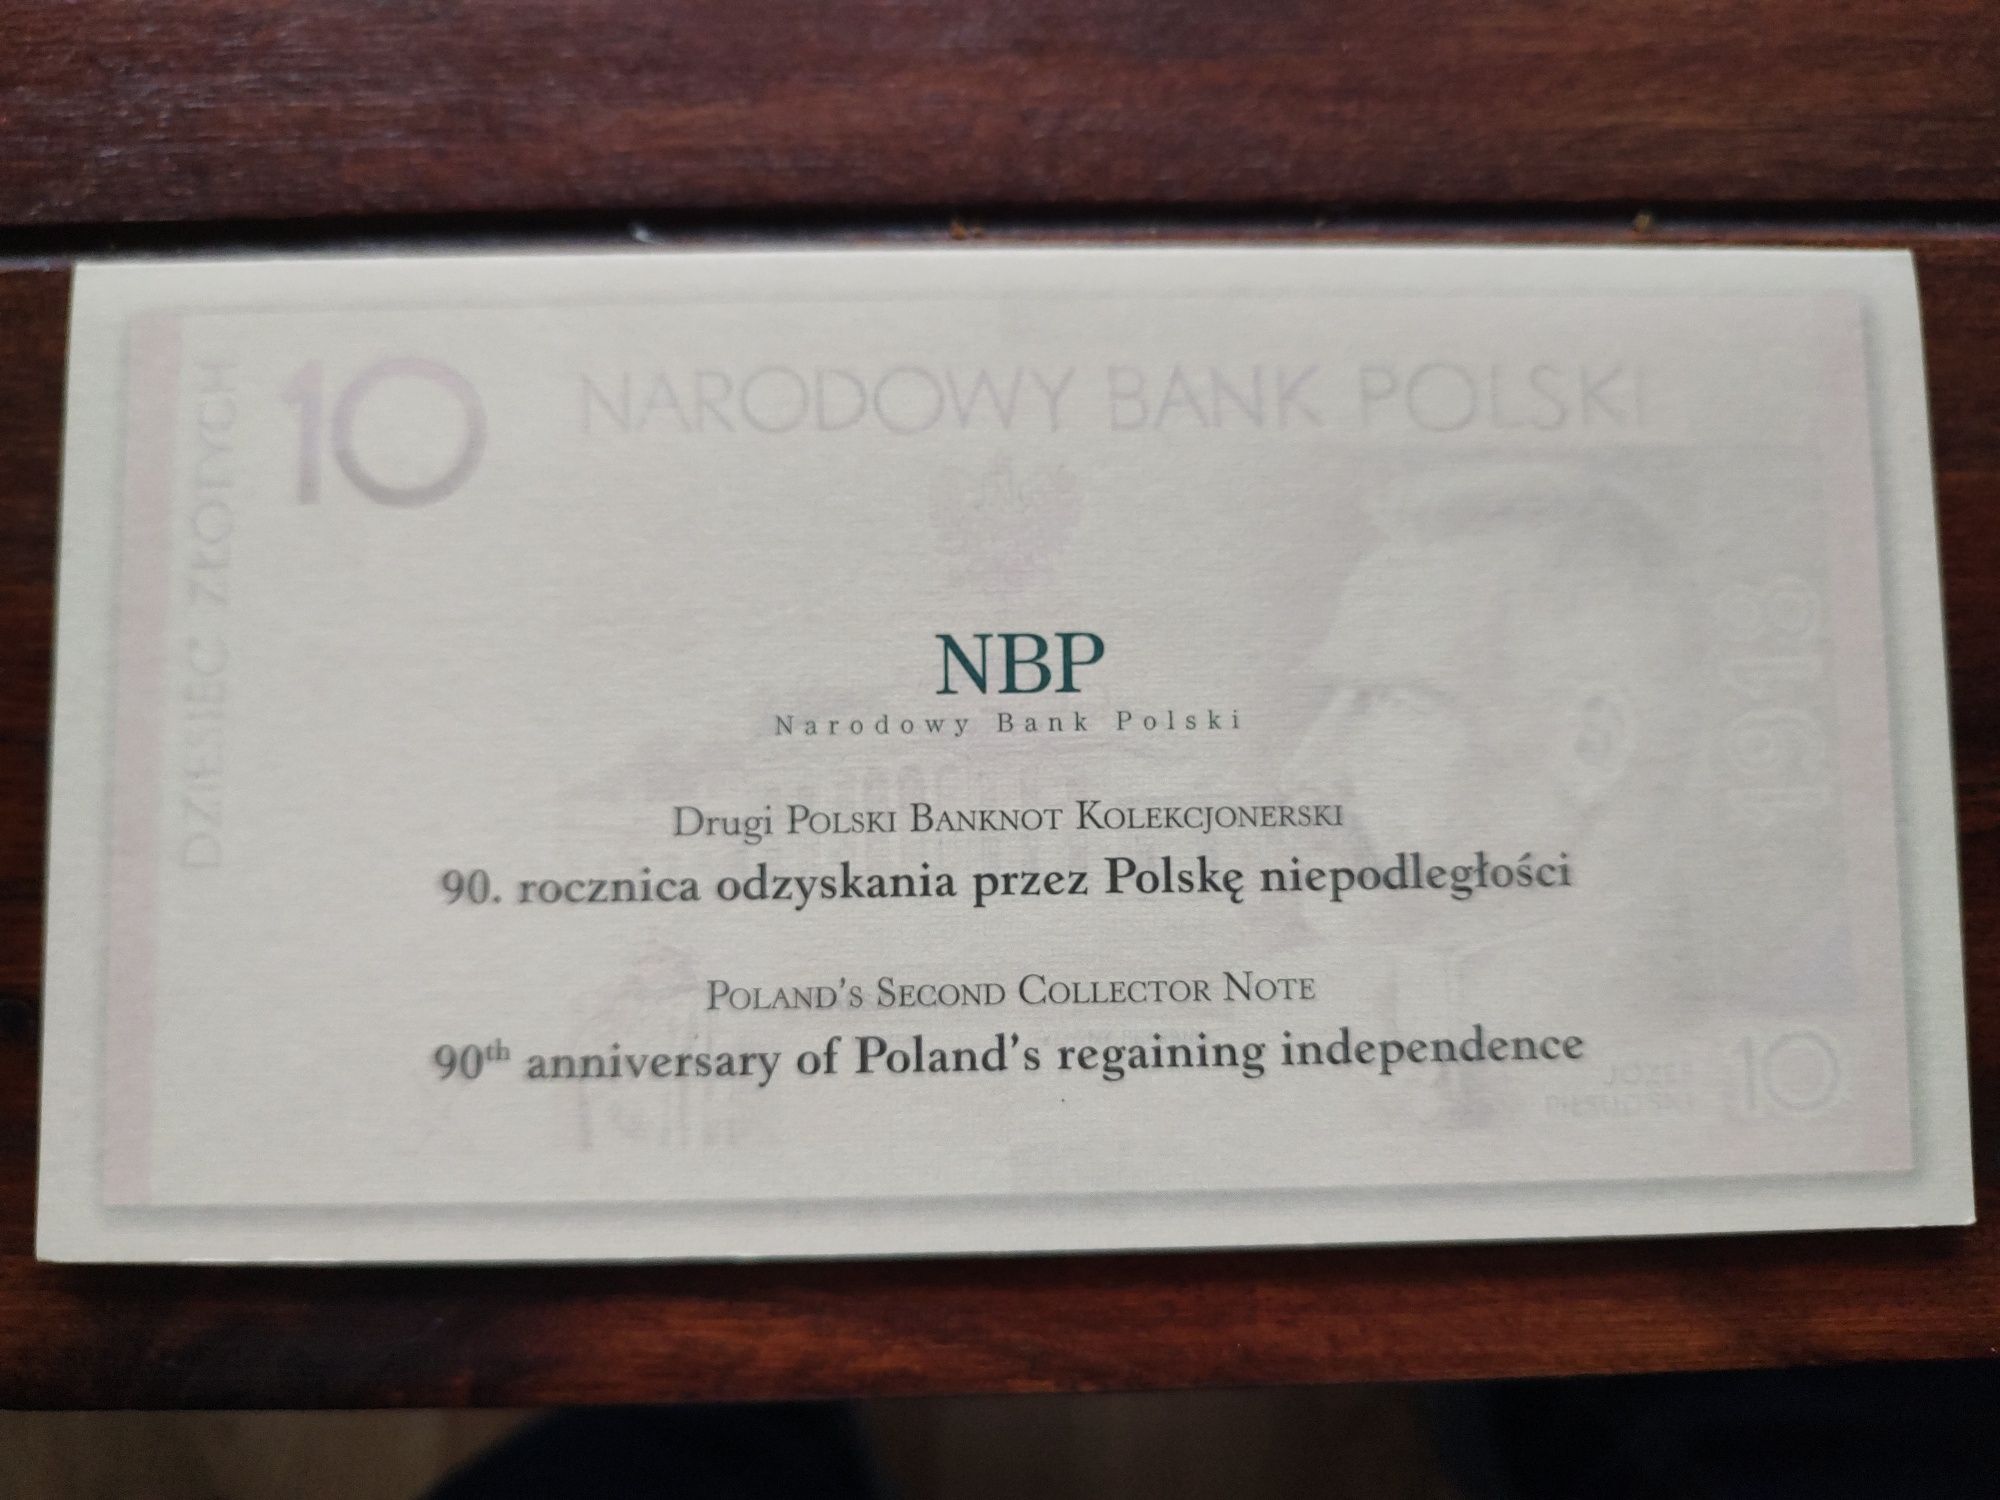 Banknot kolekcjonerski 90 rocznica niepodległości - 10 zł